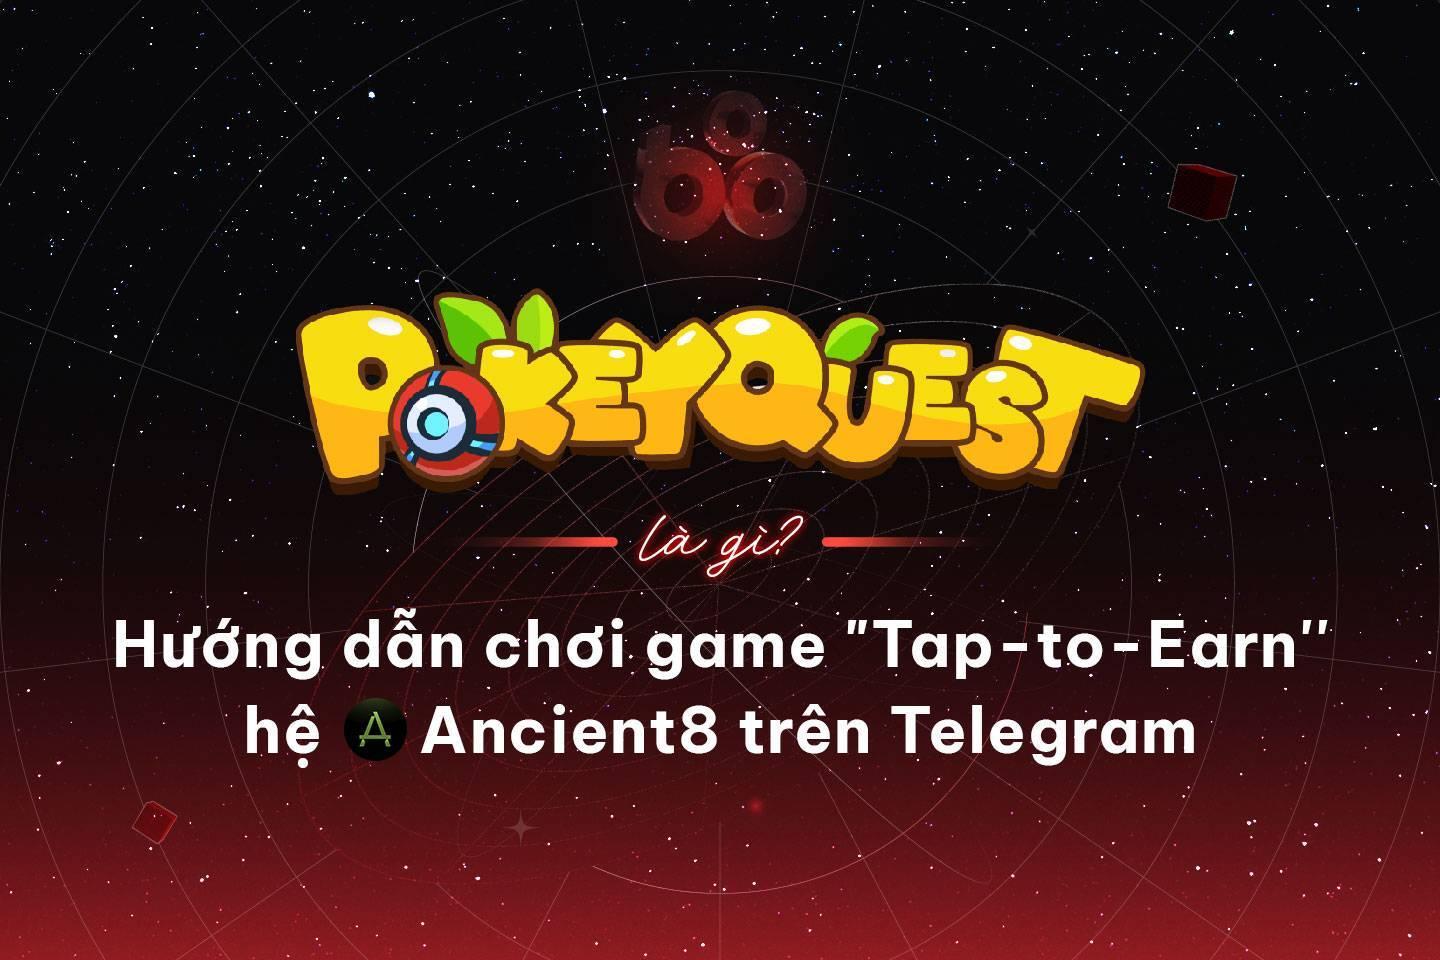 pokeyquest-la-gi-huong-dan-choi-game-tap-to-earn-he-ancient8-tren-telegram